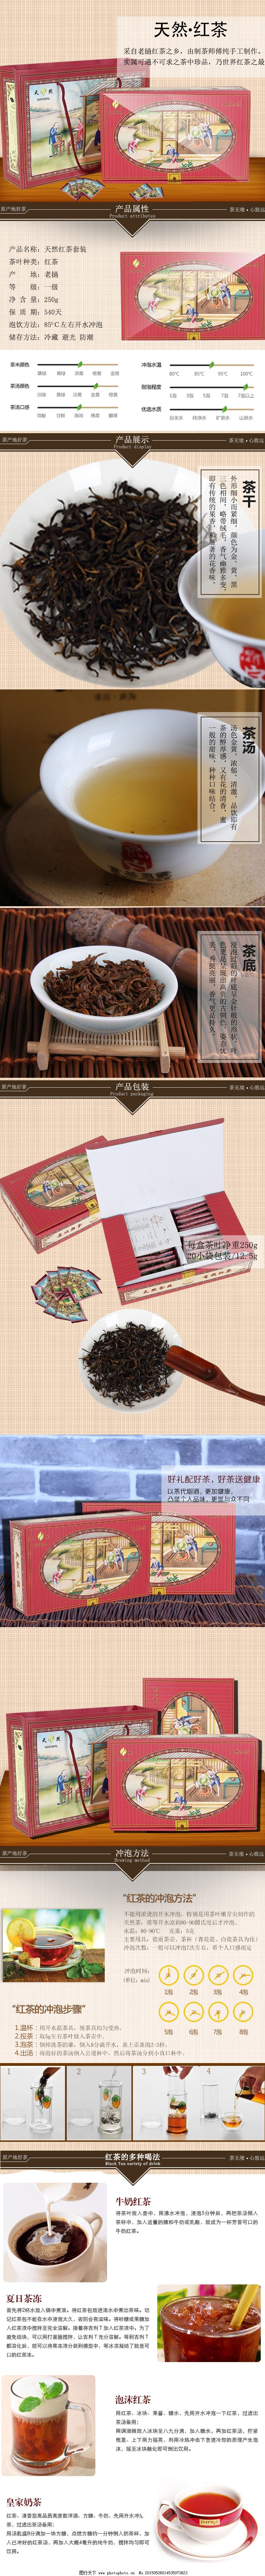 ‘~天然红茶详情页图片_食品茶饮_电商图片-  ~’ 的图片